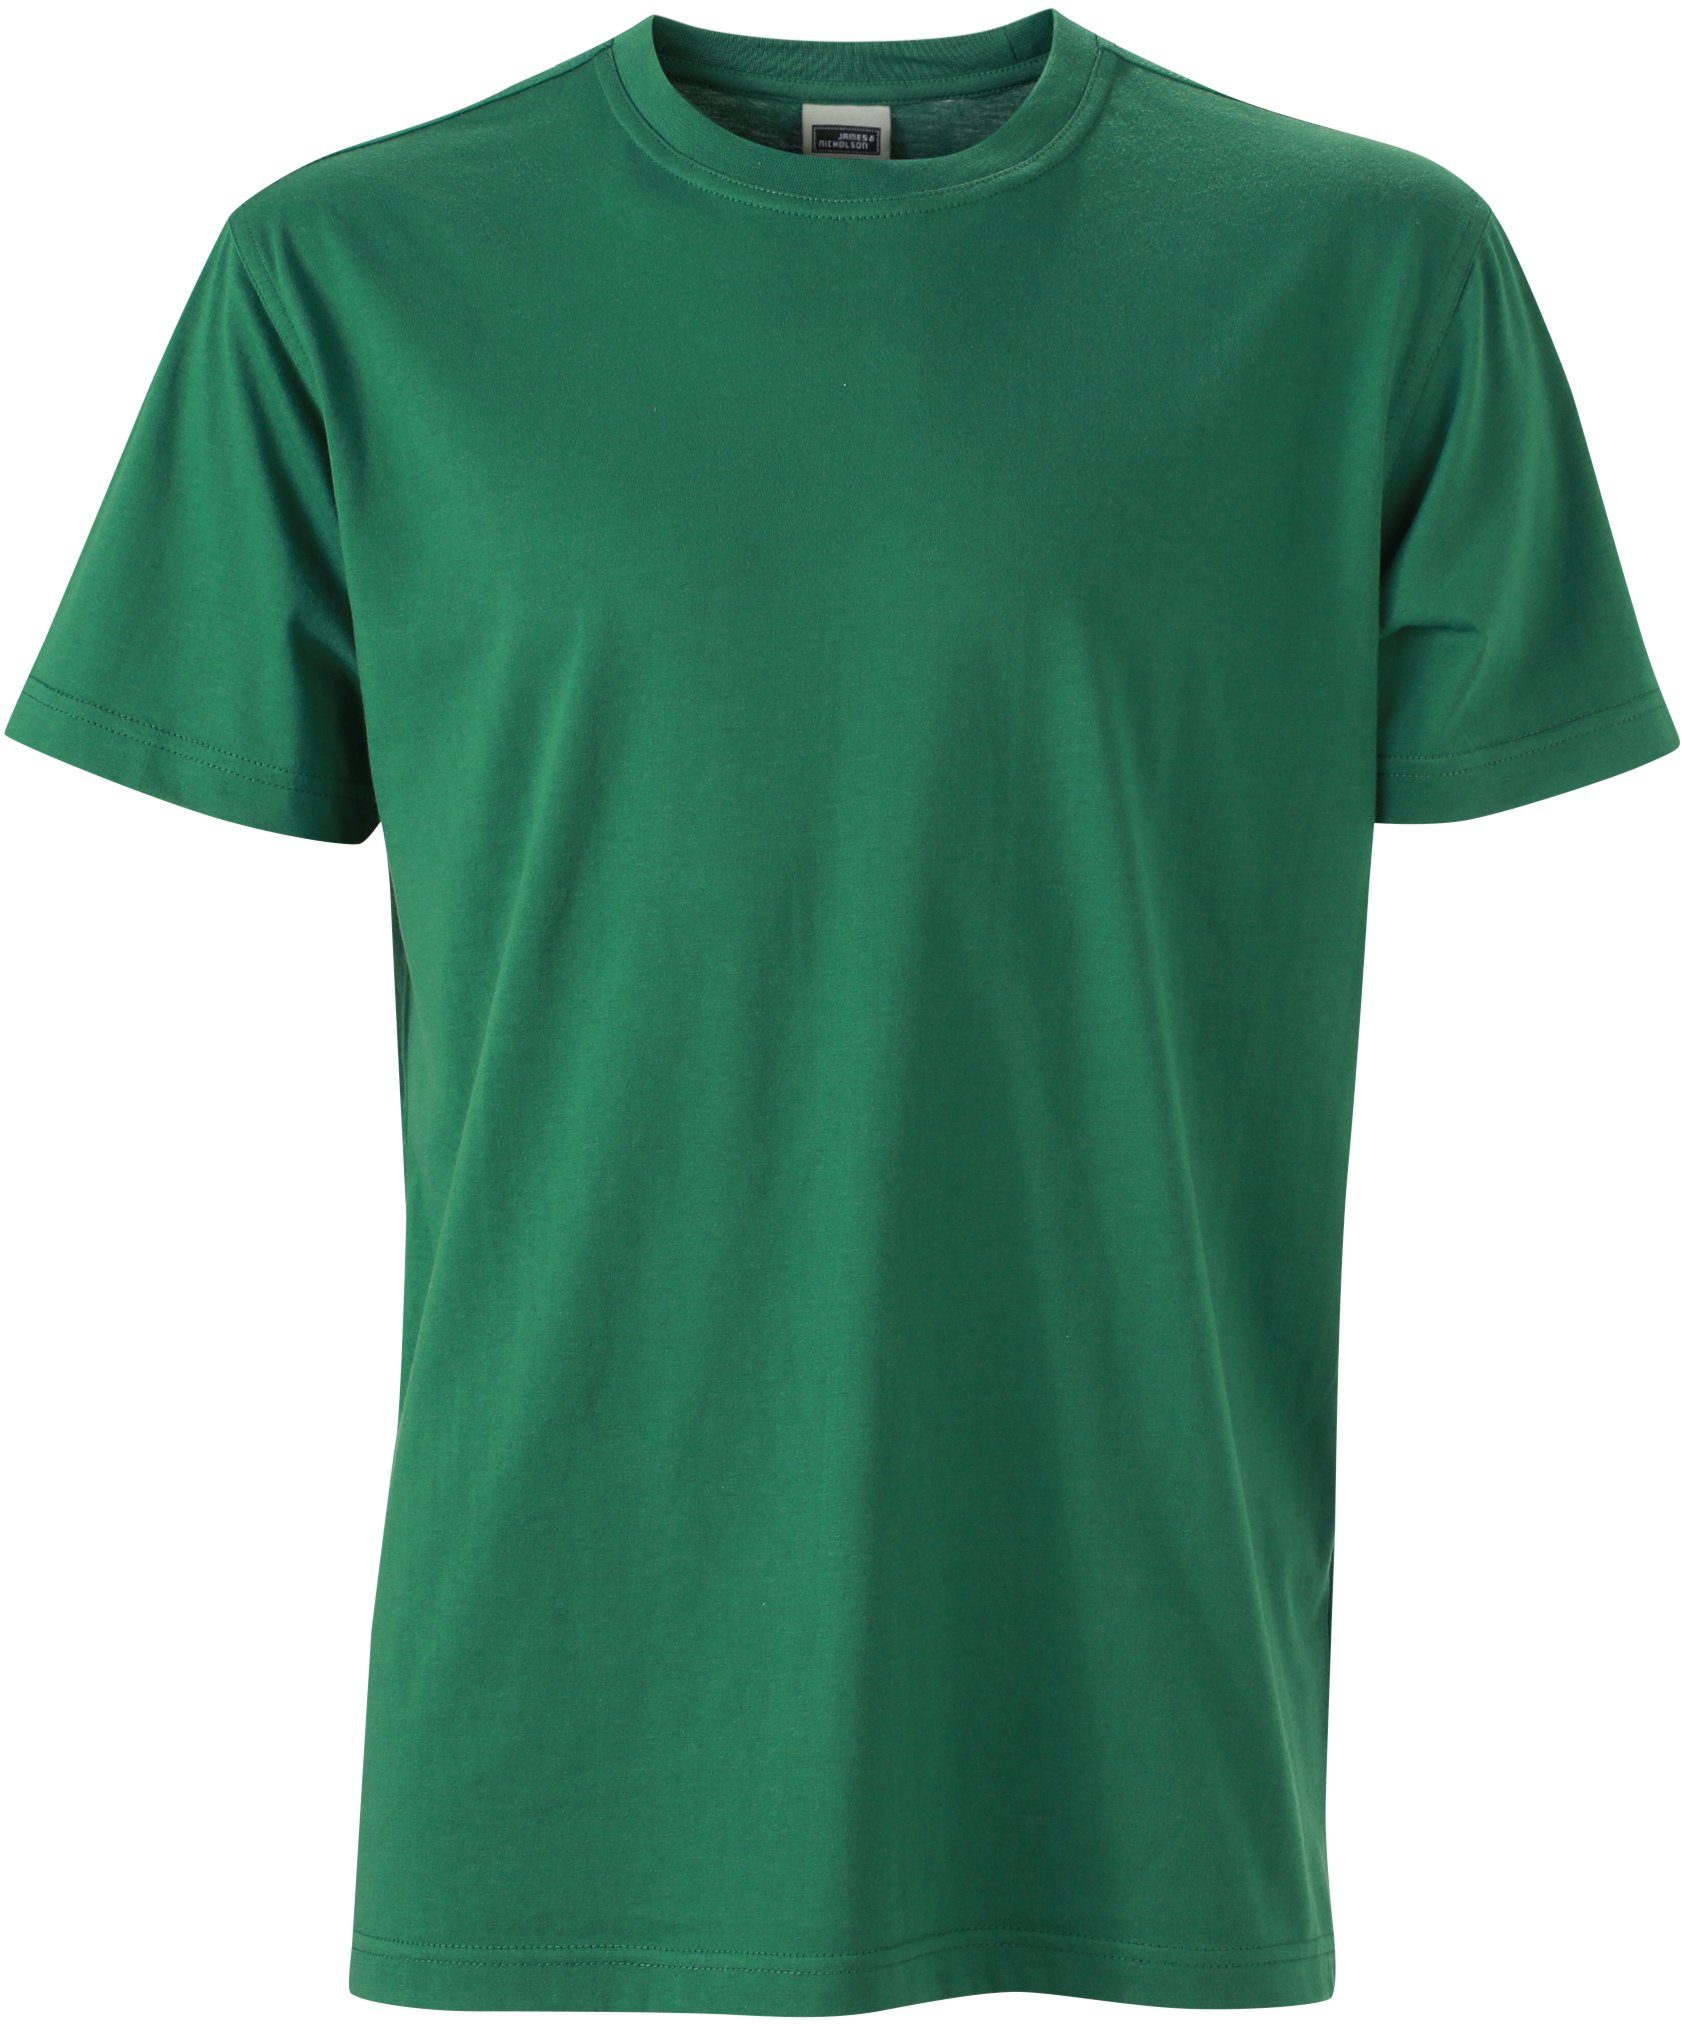 James & Nicholson T-Shirt Workwear T-Shirt FaS50838 auch in großen Größen Dark Green